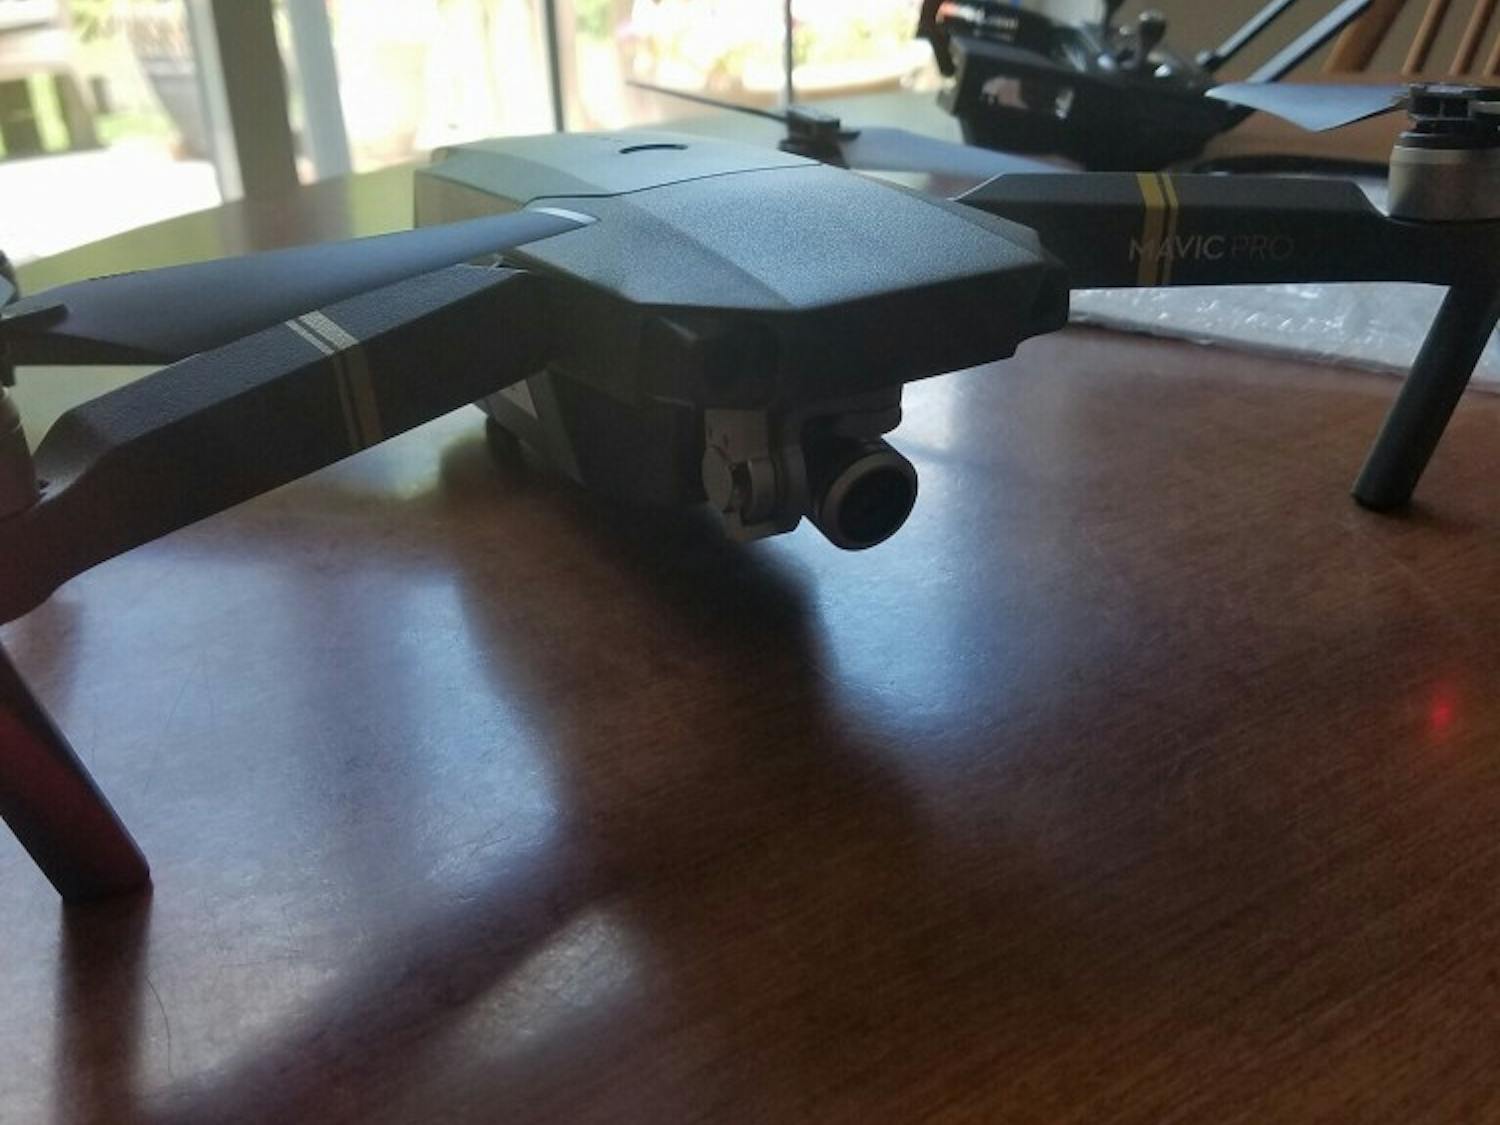 A drone